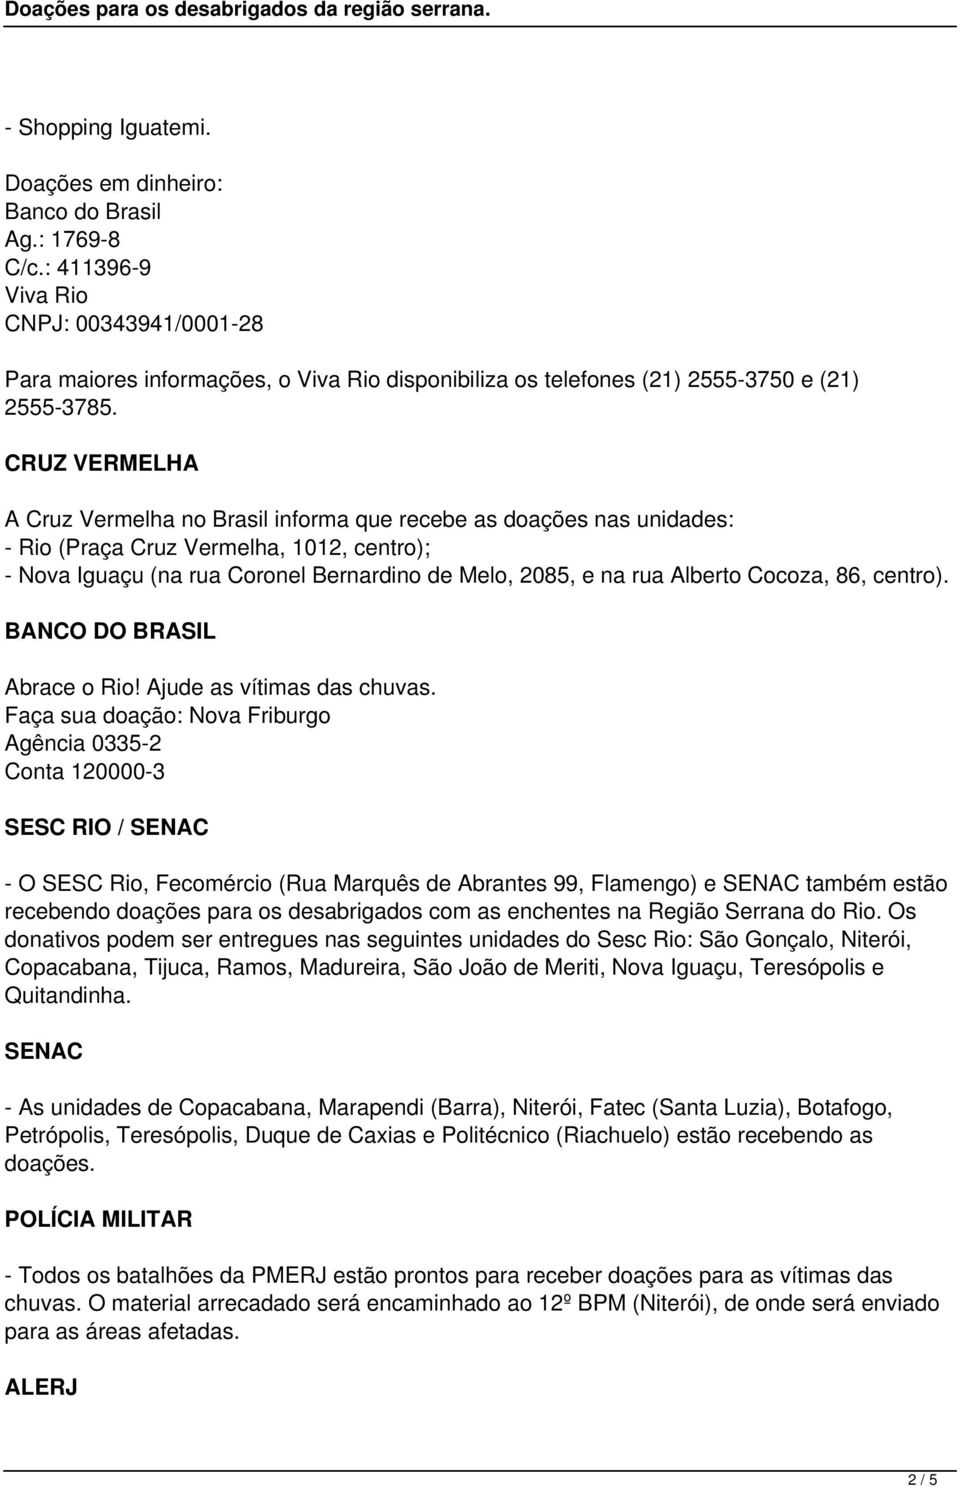 CRUZ VERMELHA A Cruz Vermelha no Brasil informa que recebe as doações nas unidades: - Rio (Praça Cruz Vermelha, 1012, centro); - Nova Iguaçu (na rua Coronel Bernardino de Melo, 2085, e na rua Alberto